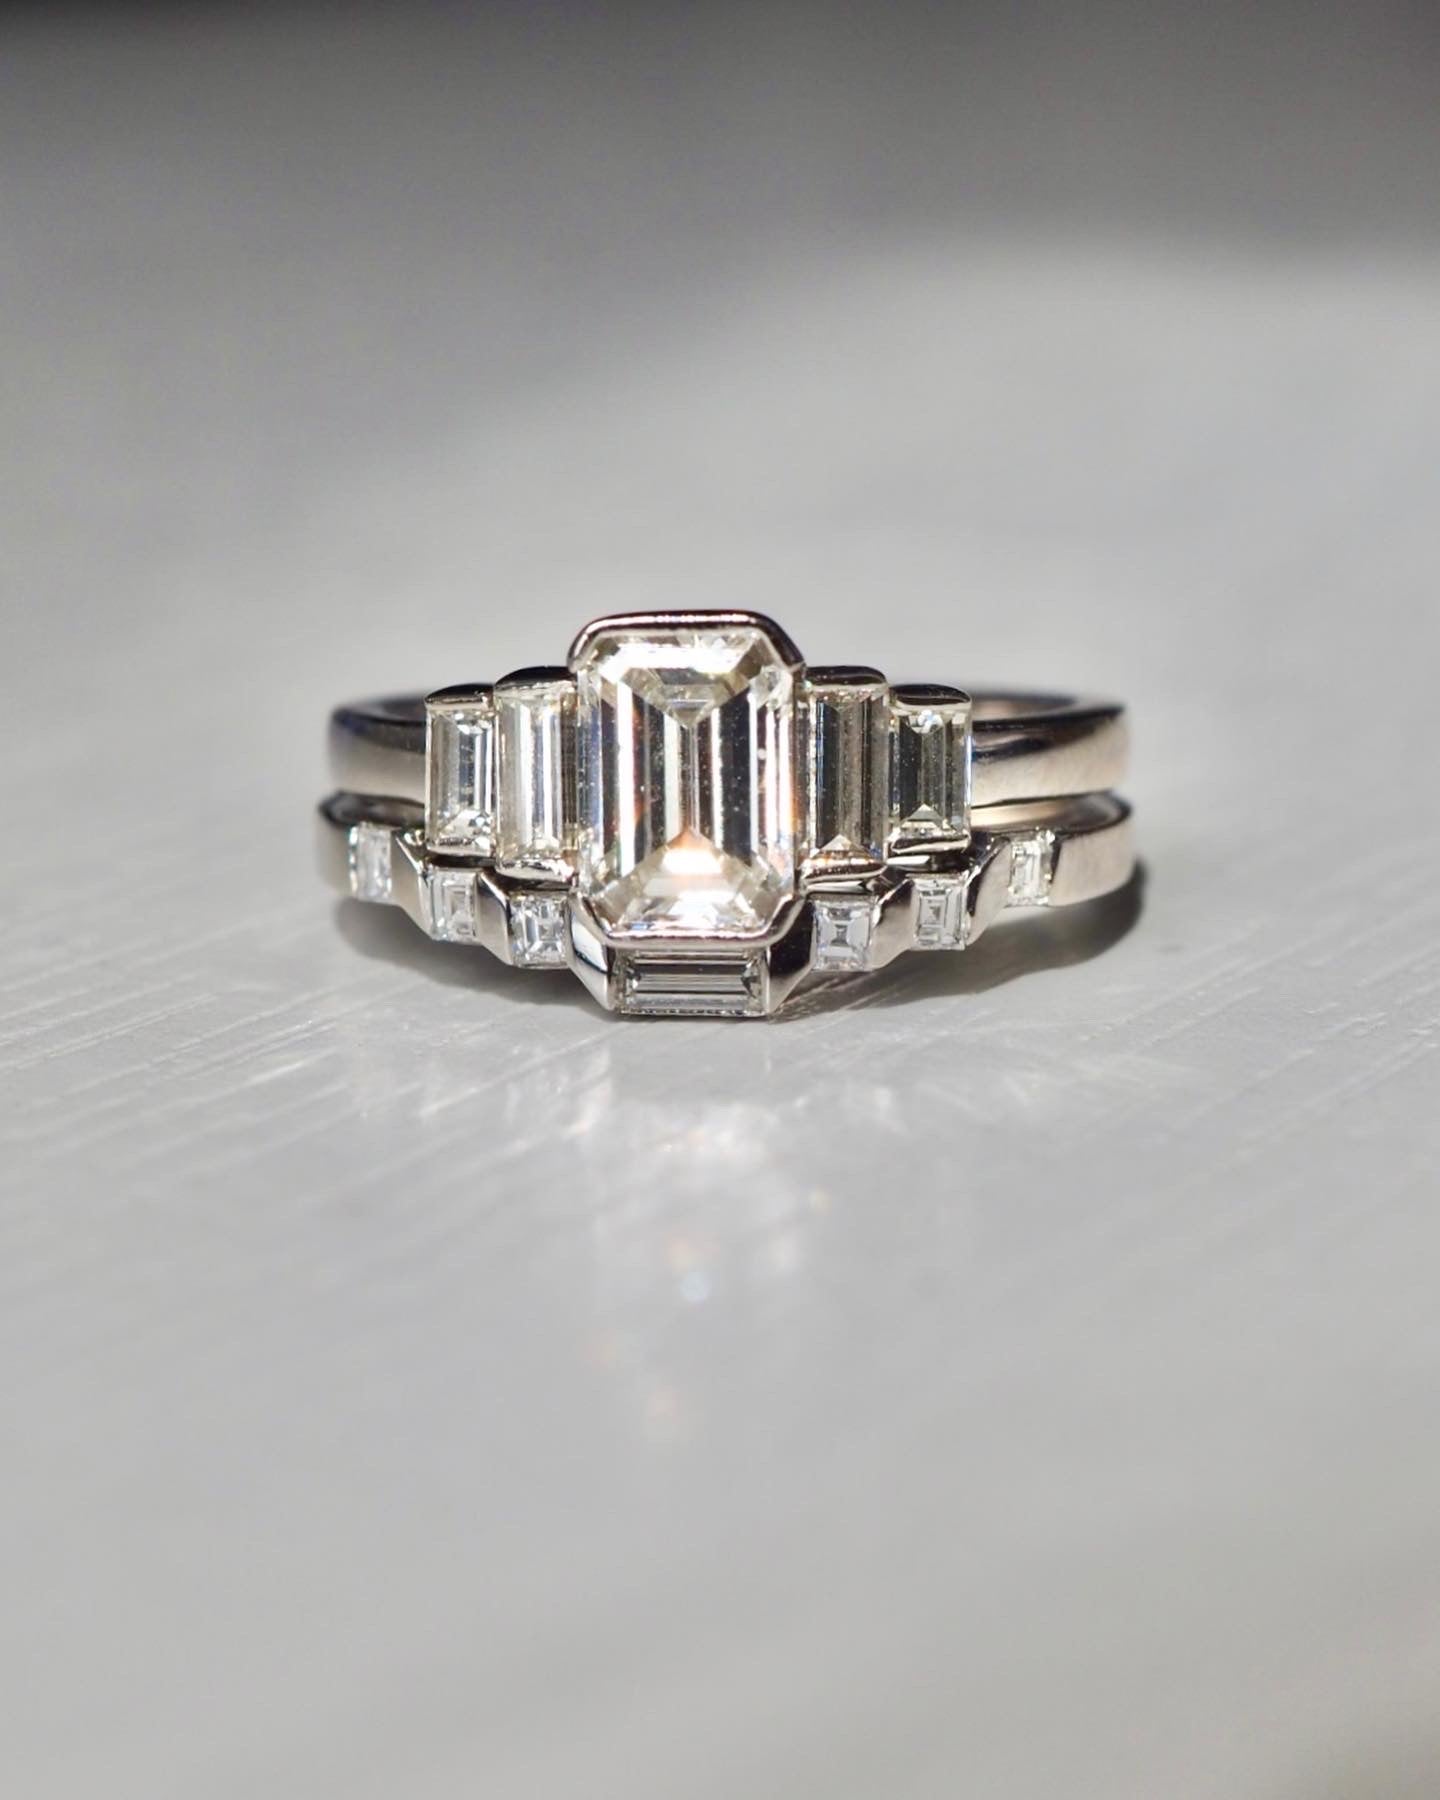 Emerald cut diamond with matching wedding band